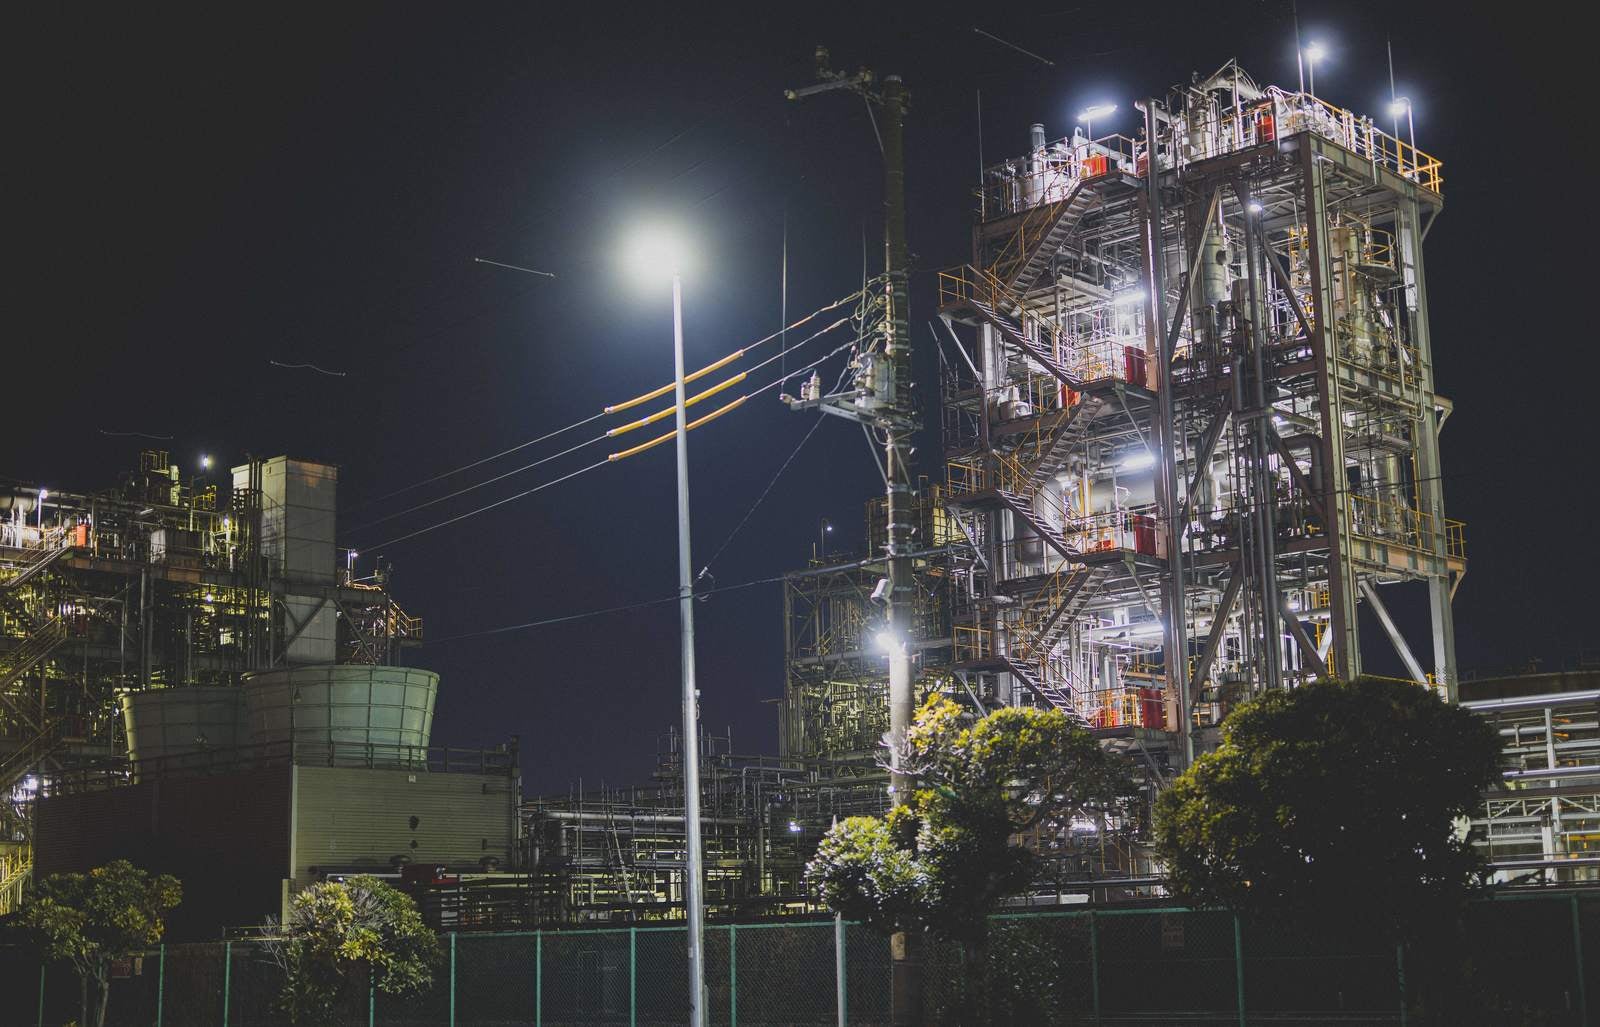 「深夜の工場と街灯」の写真